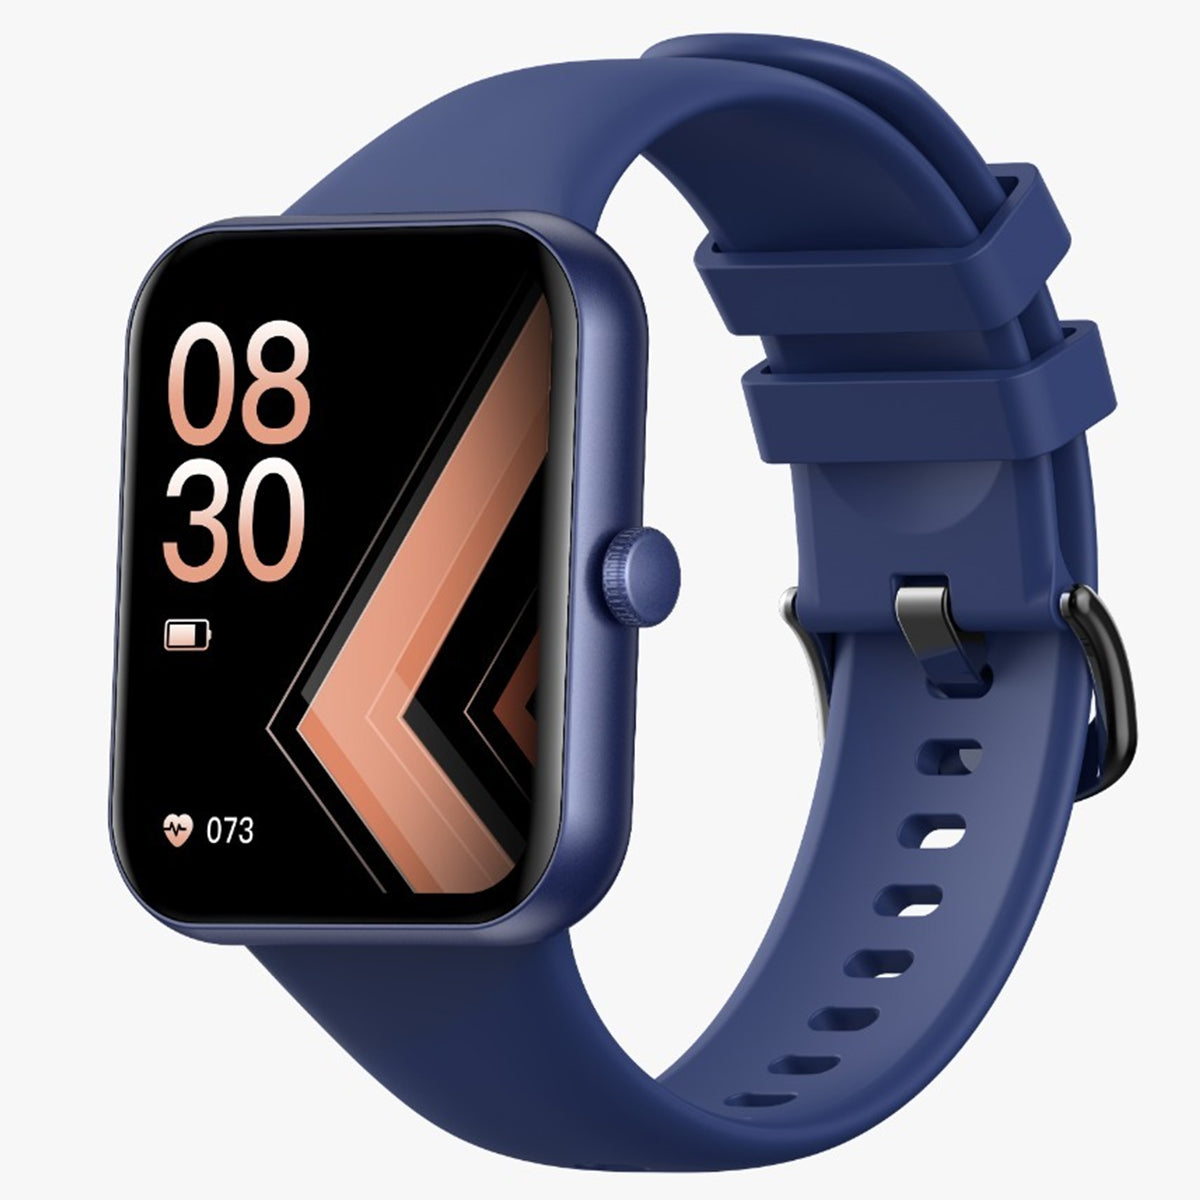 Fralugio Smart Watch Reloj Inteligente L32 Full Touch Ips Hd